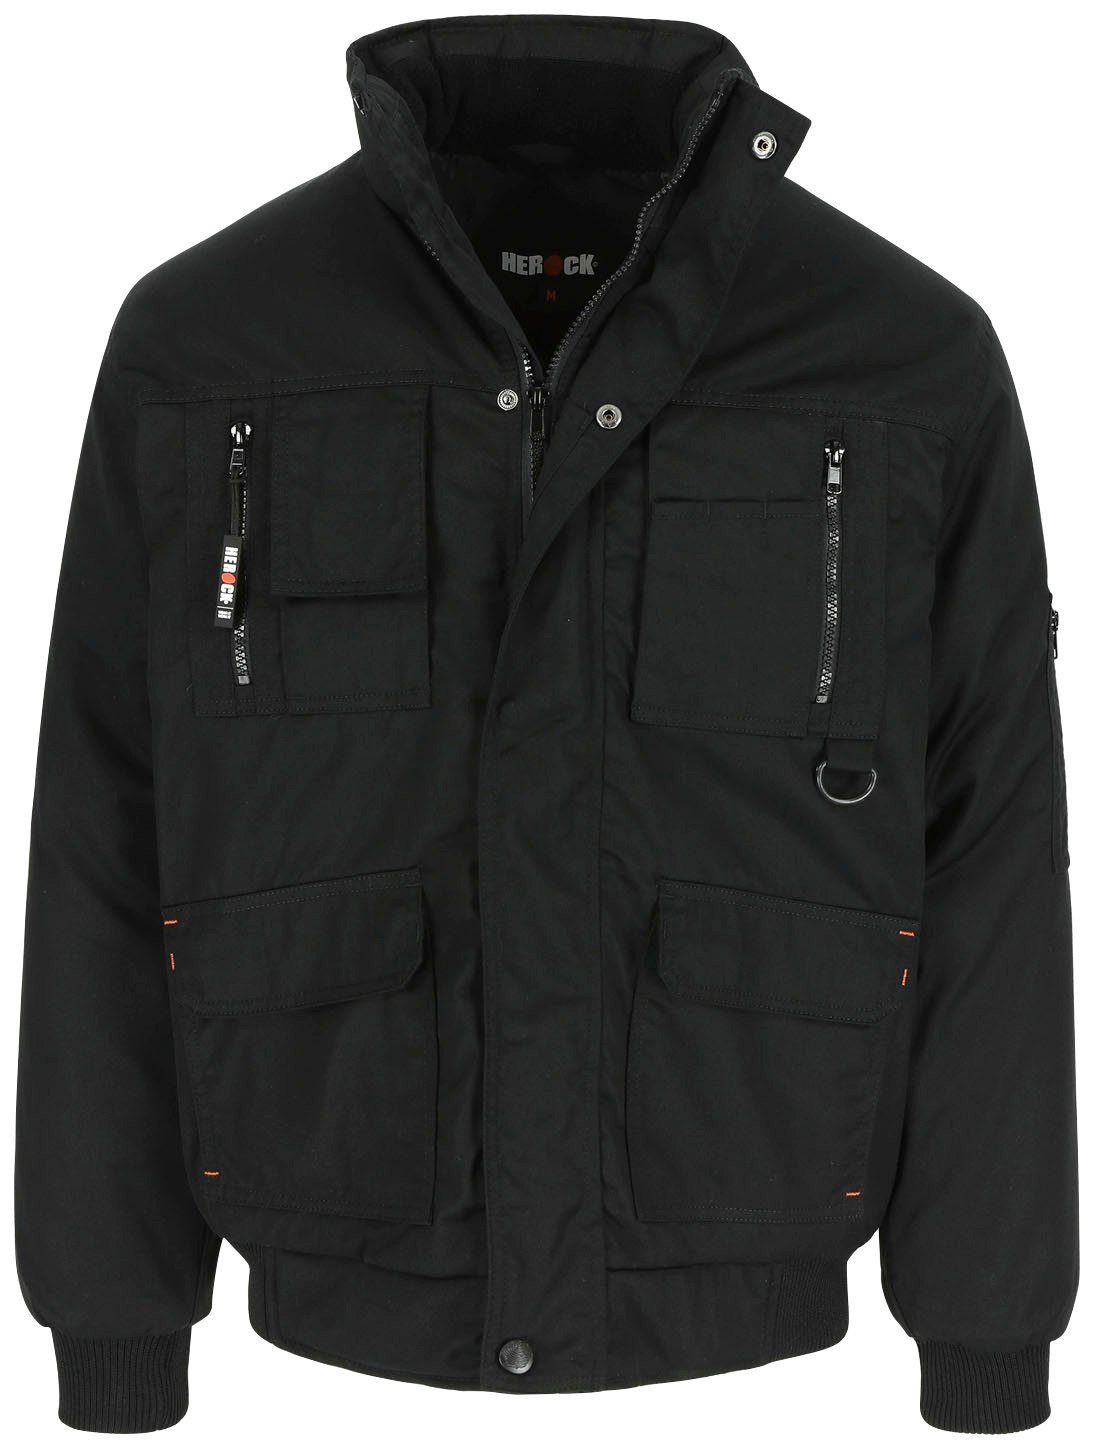 Herock Arbeitsjacke Typhon Jacke Fleece-Kragen, Taschen, viele Wasserabweisend robust, schwarz mit Farben viele